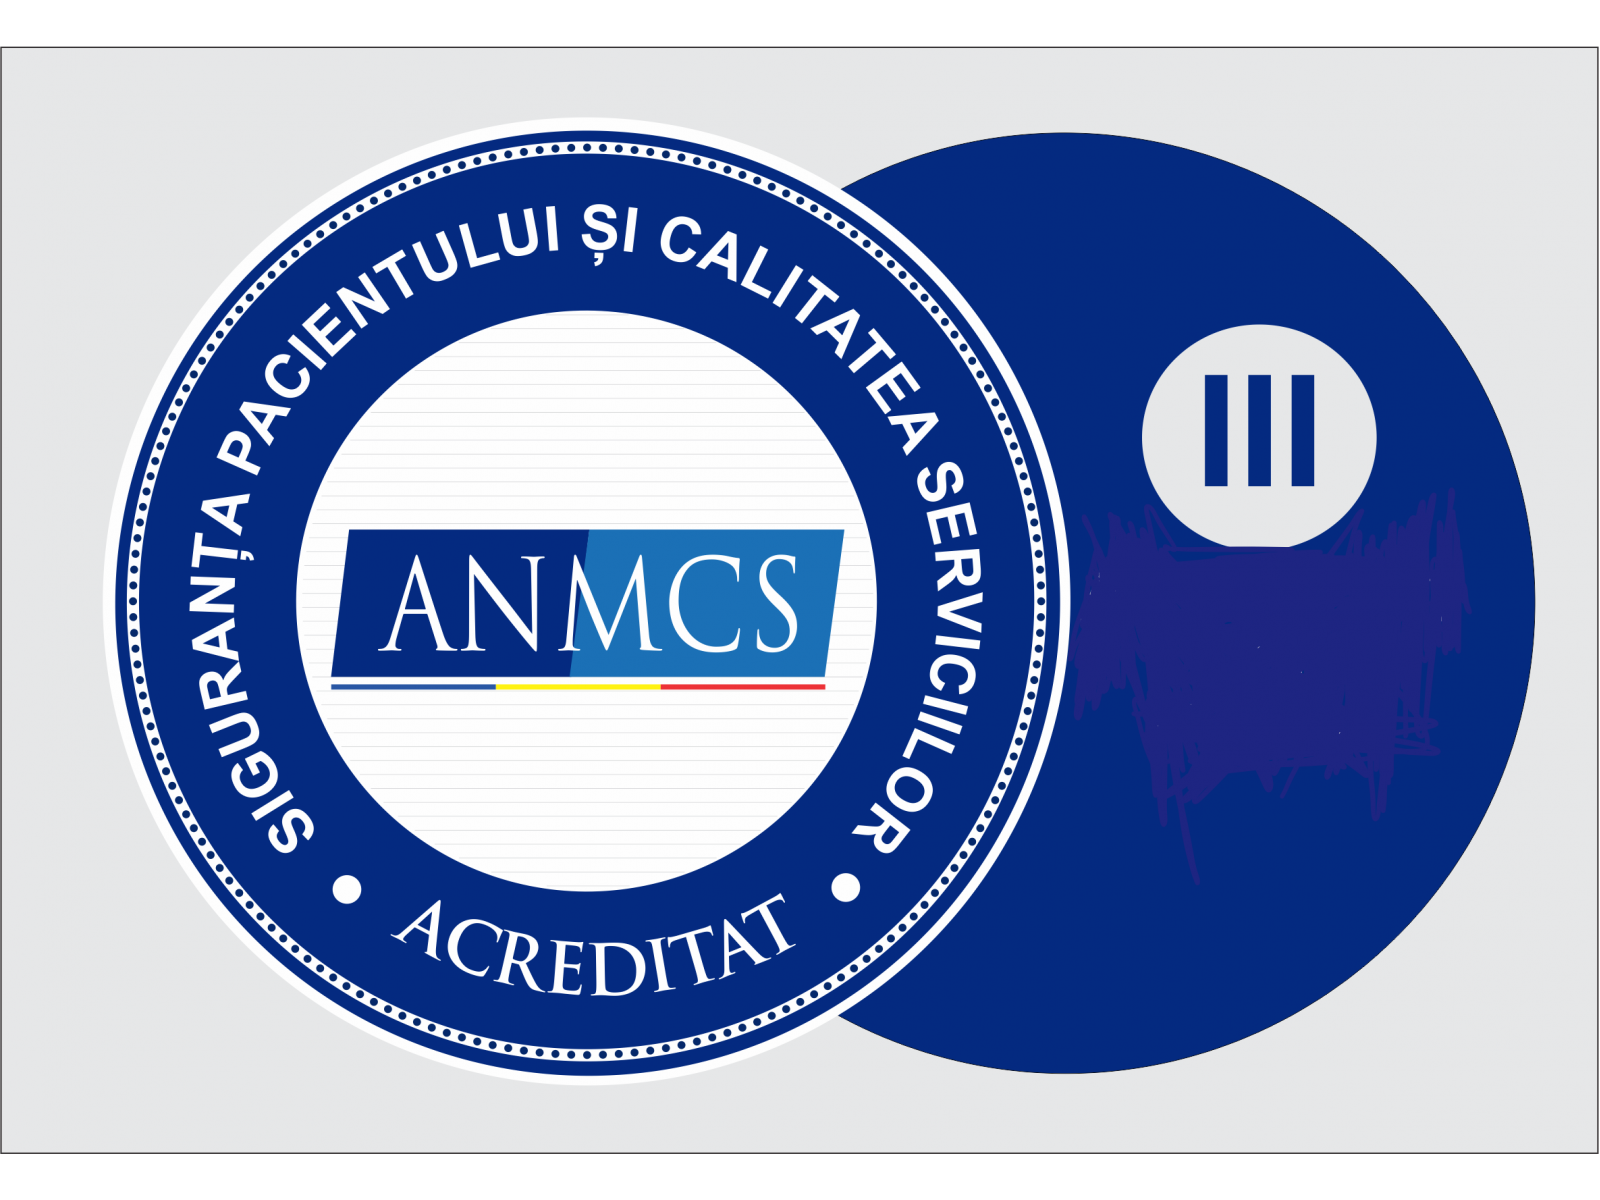 SPITALUL OXXYGENE - logo-anmcs-categorie-III-acreditare.png